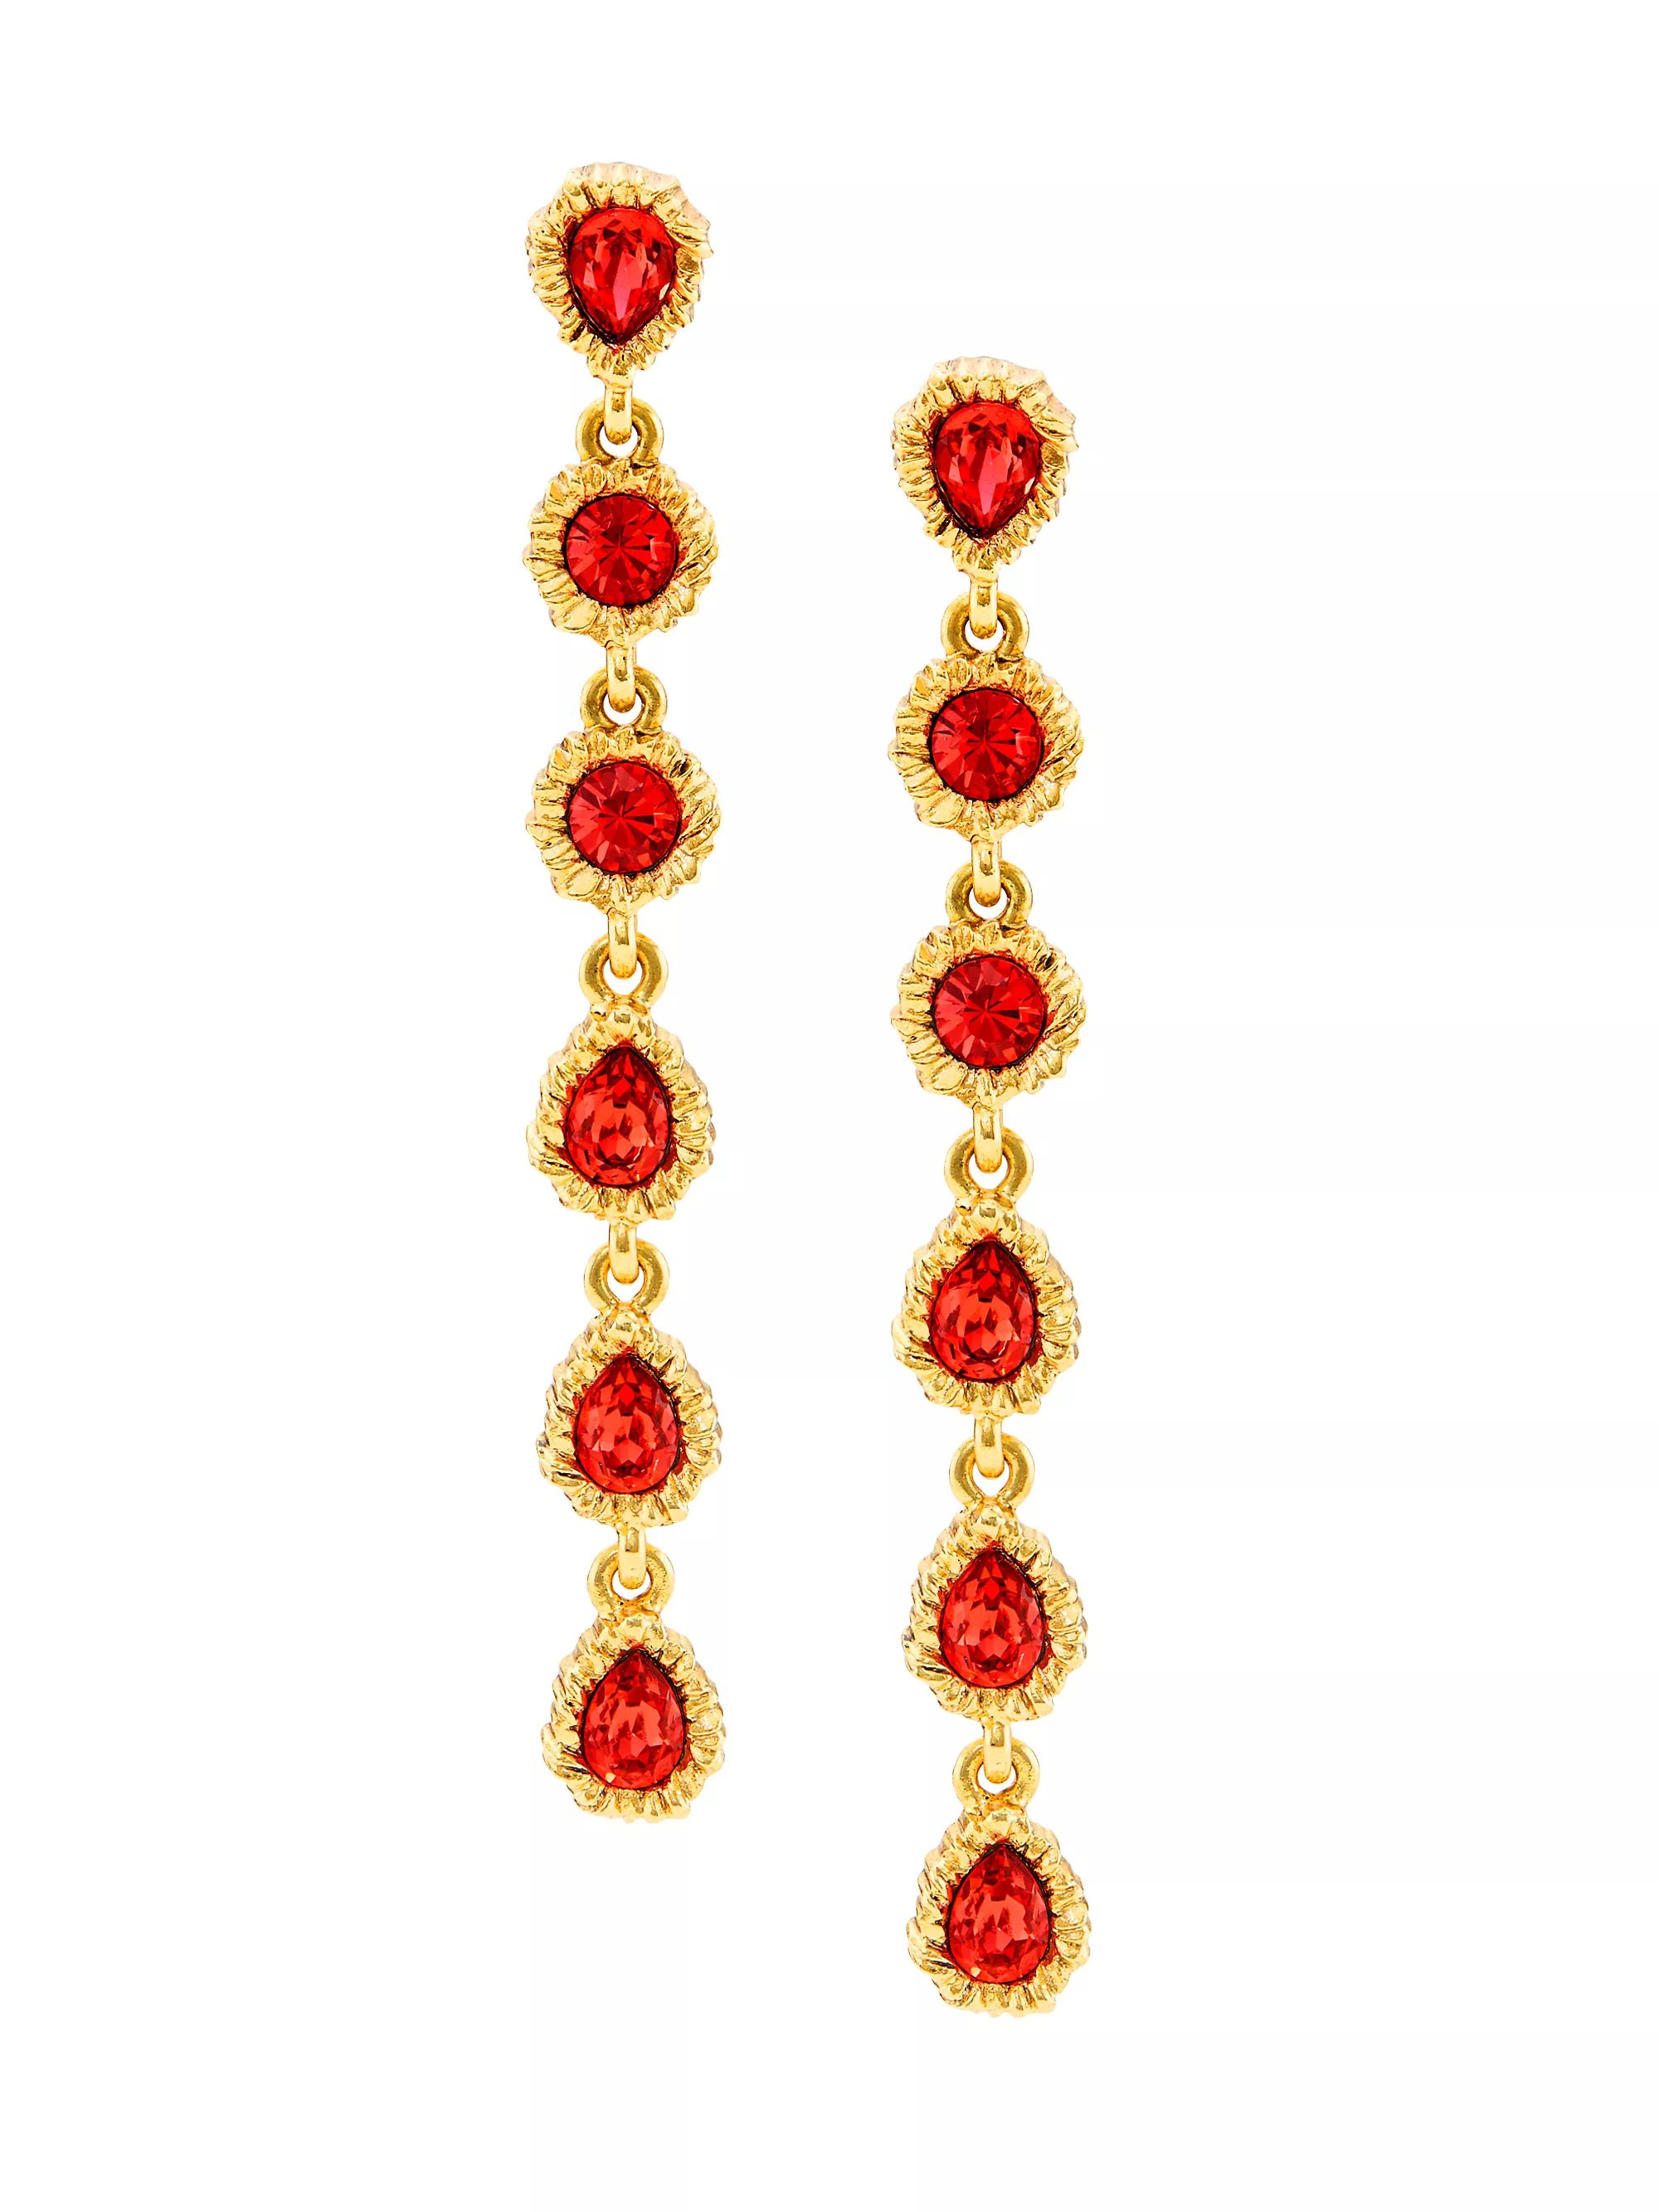 Lintzer Goldtone & Glass Crystal Drop Earrings | Saks Fifth Avenue